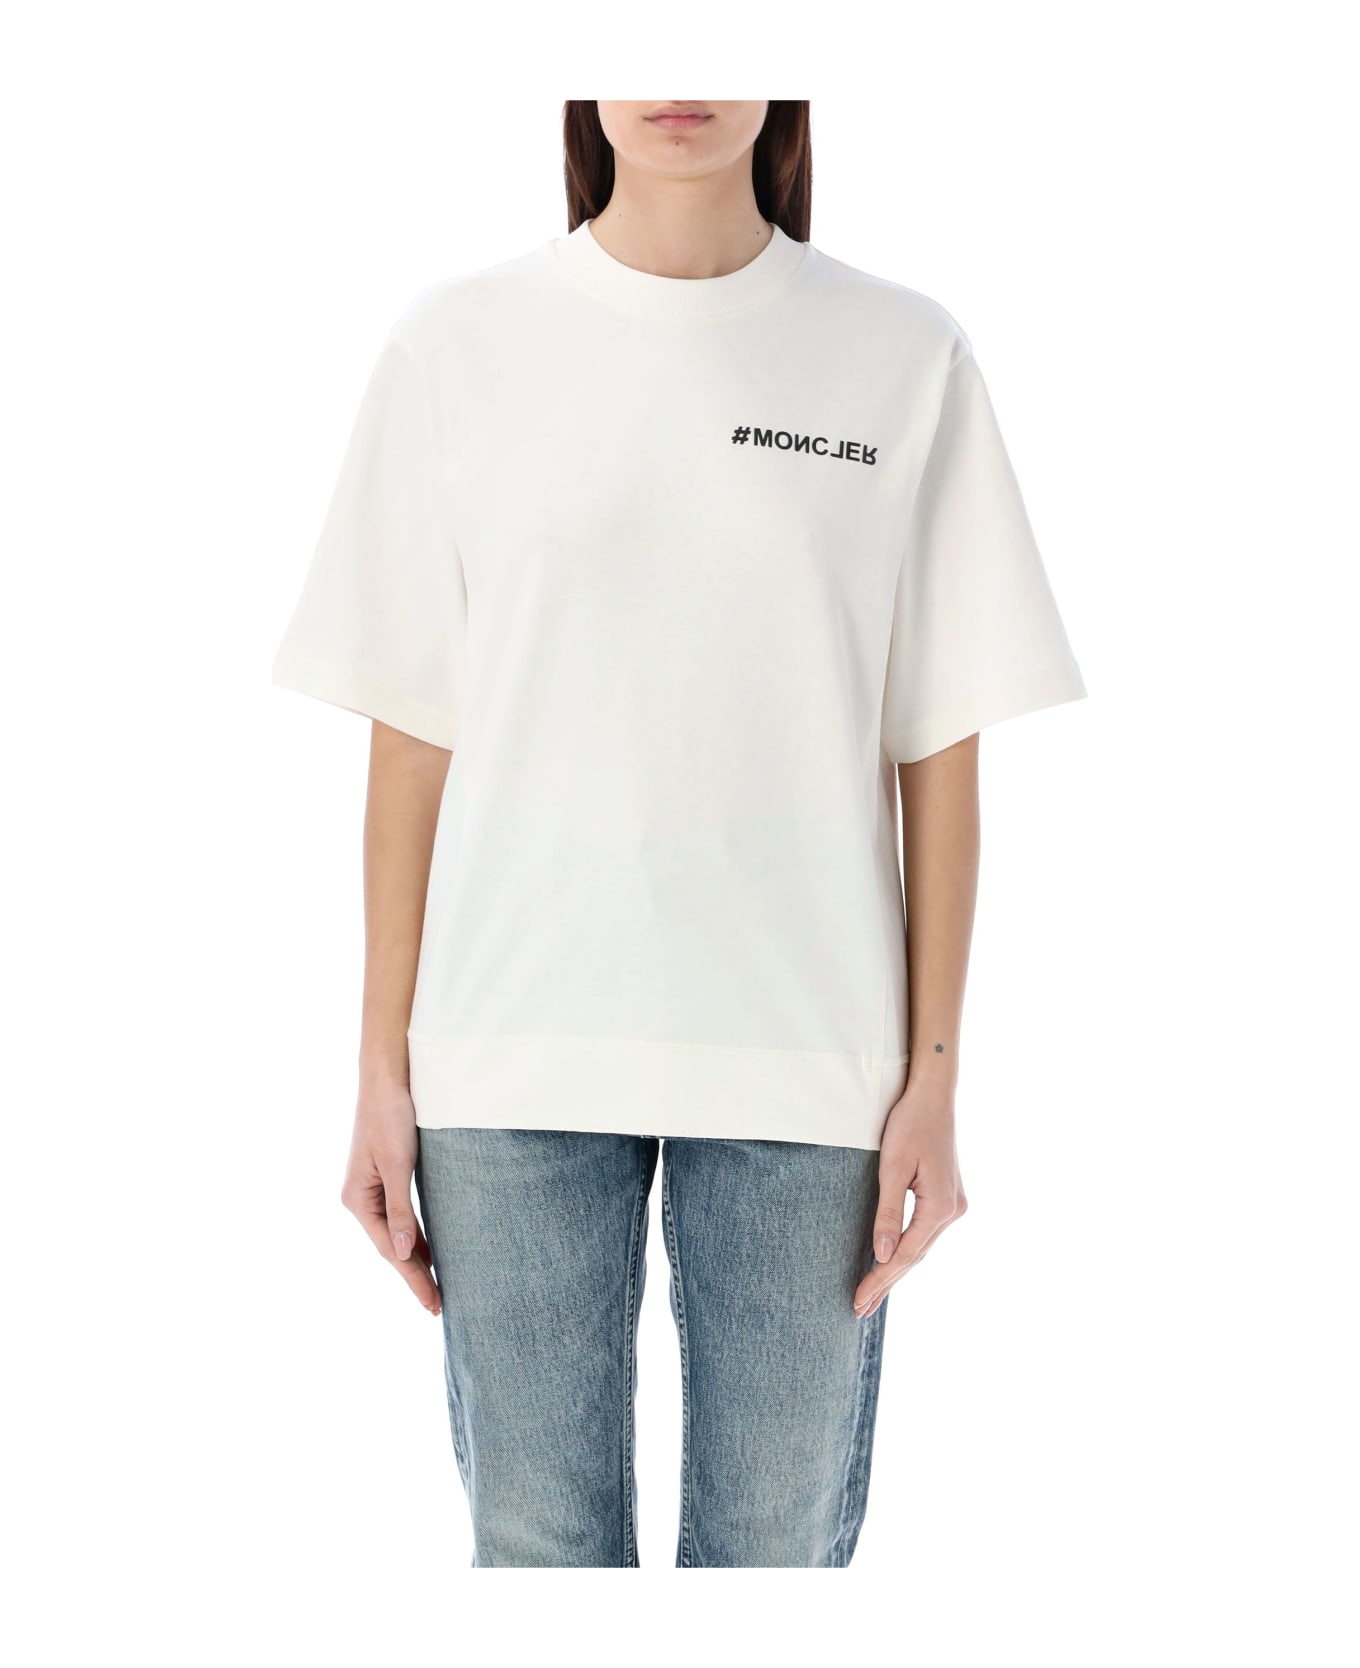 Moncler Grenoble T-shirt Tmm - WHITE Tシャツ